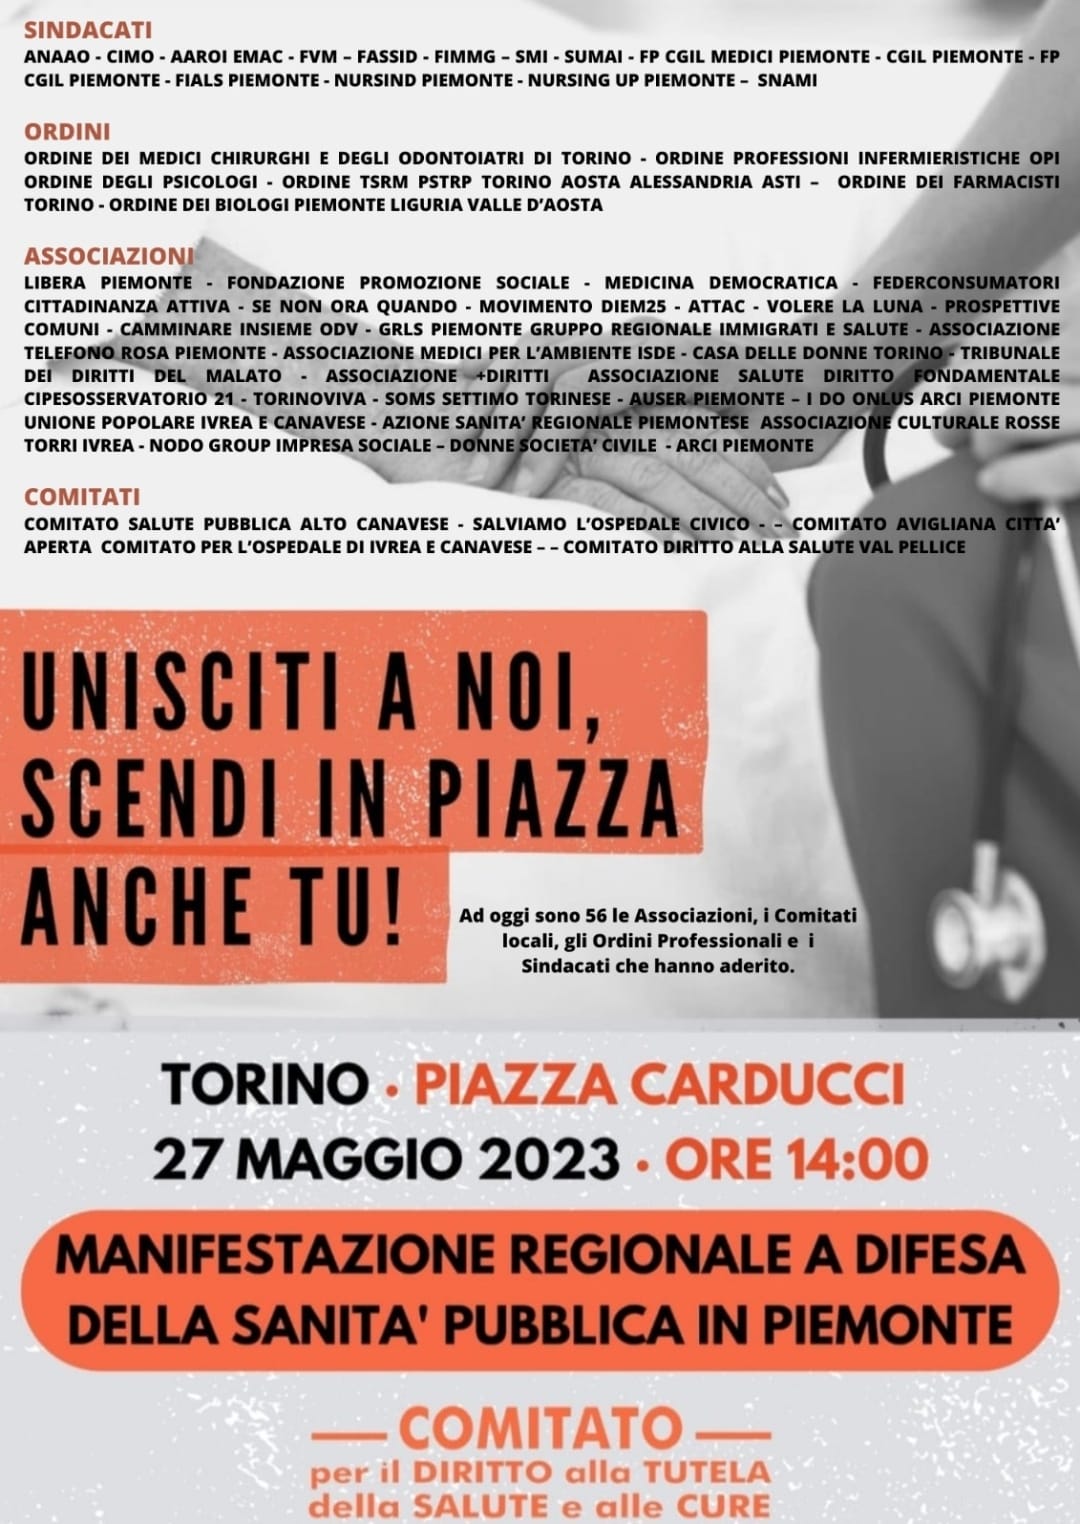 Manifestazione regionale a difesa della Sanità pubblica in Piemonte